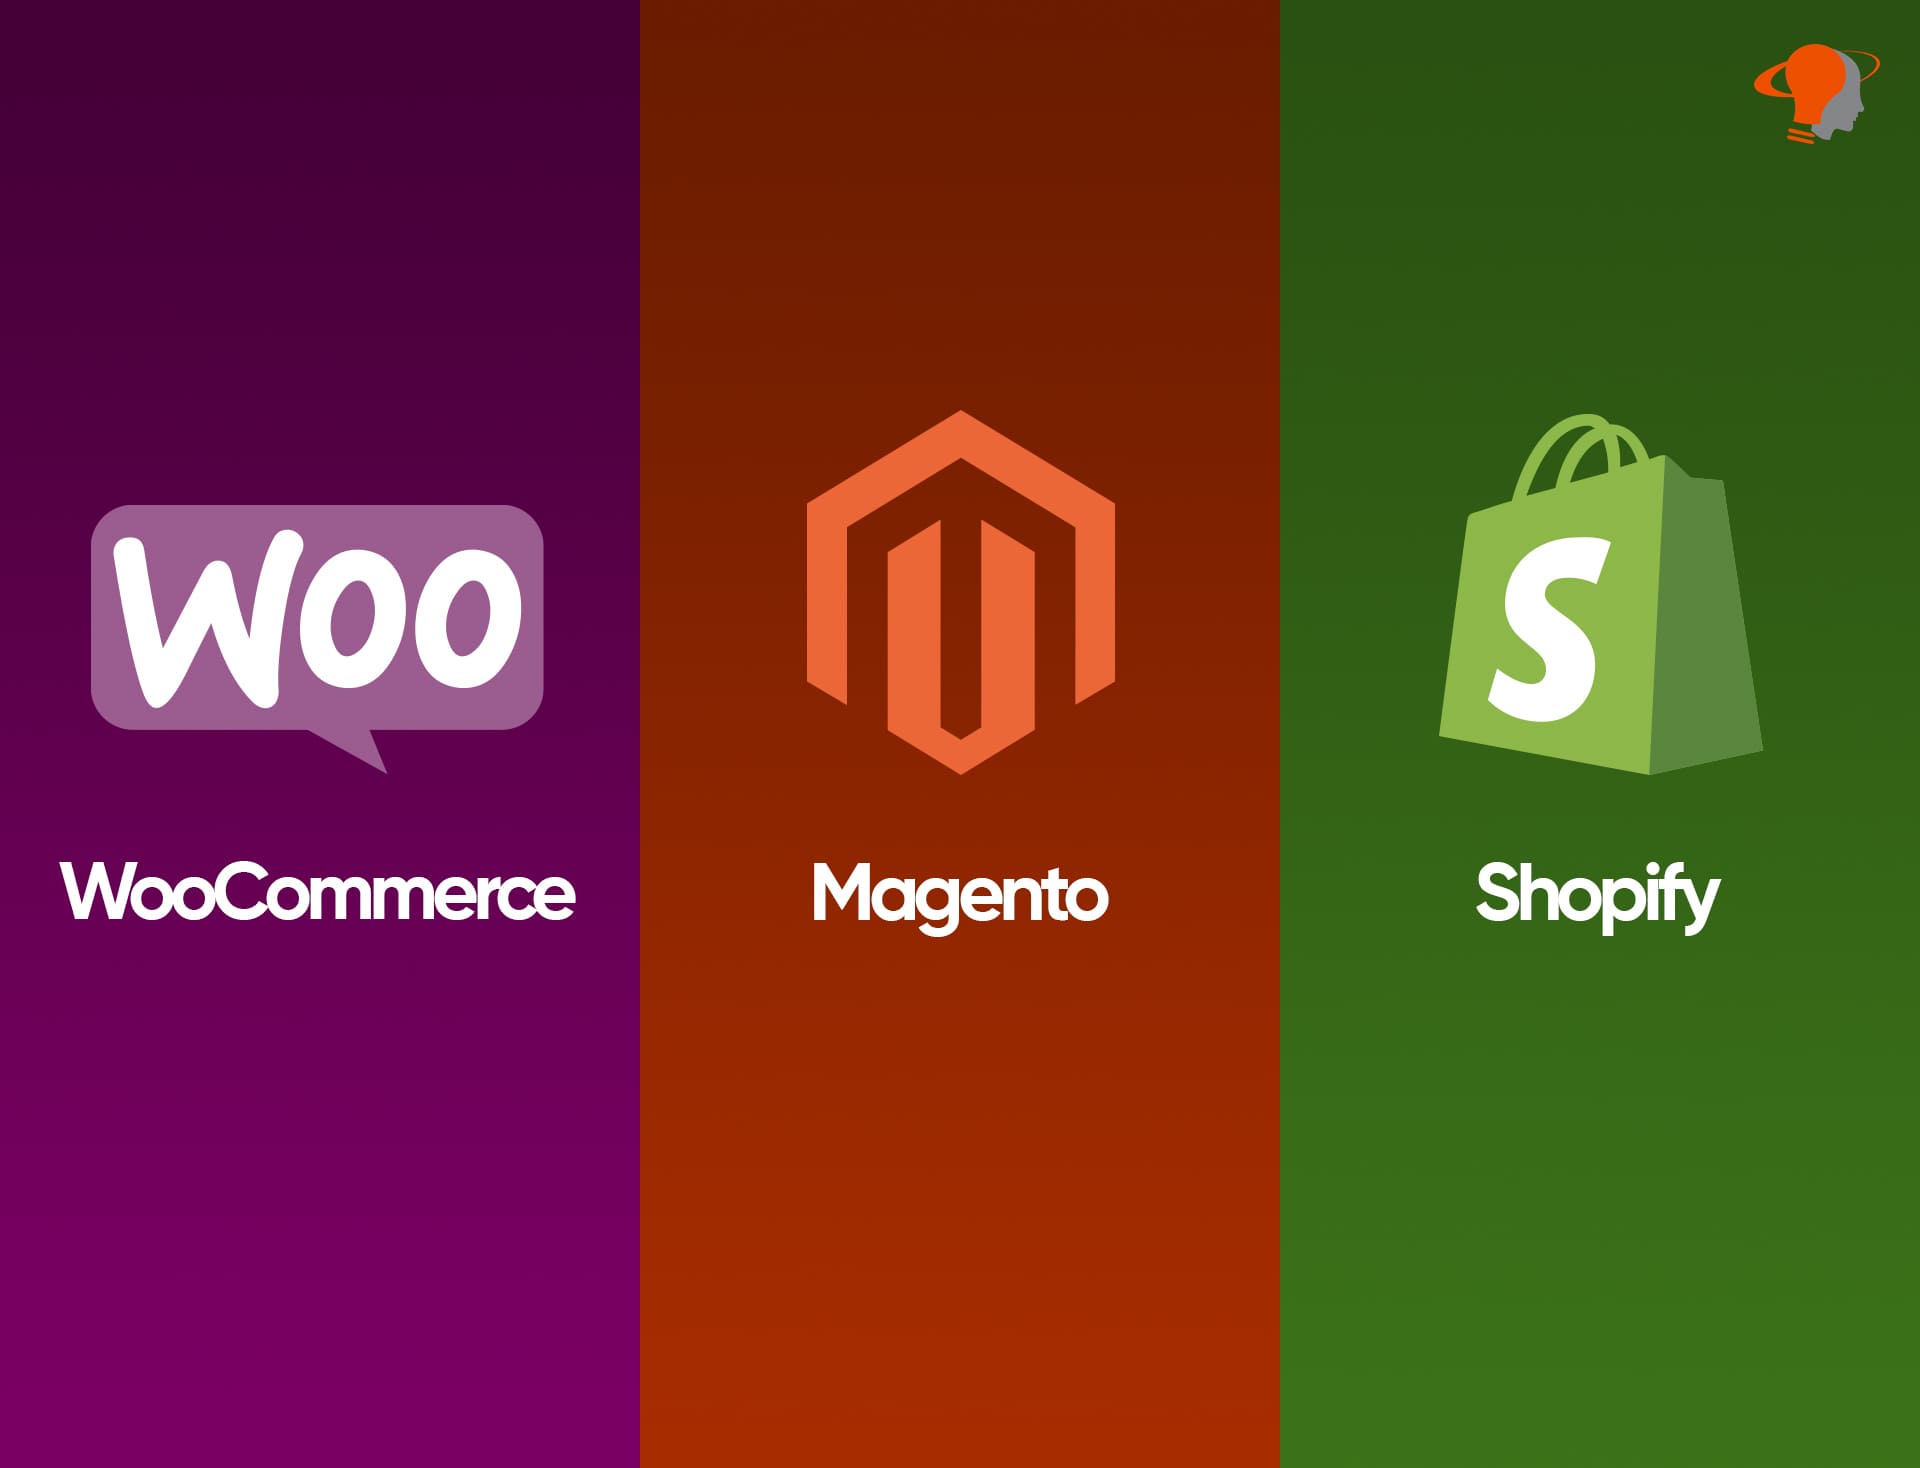 Shopify vs Magento vs WooCommerce